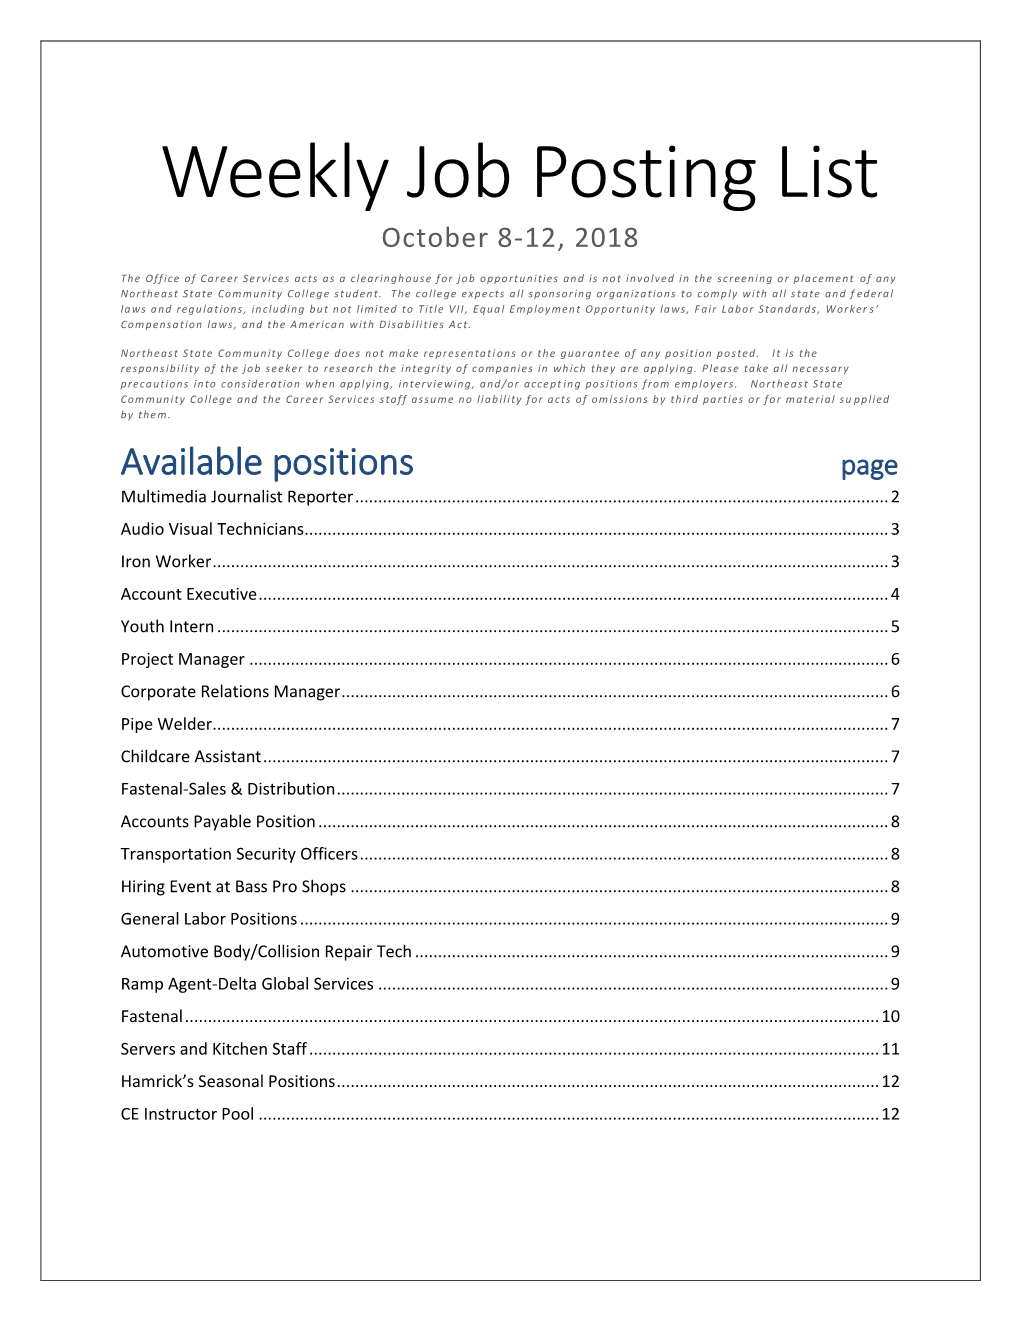 Weekly Job Posting List October 8-12, 2018